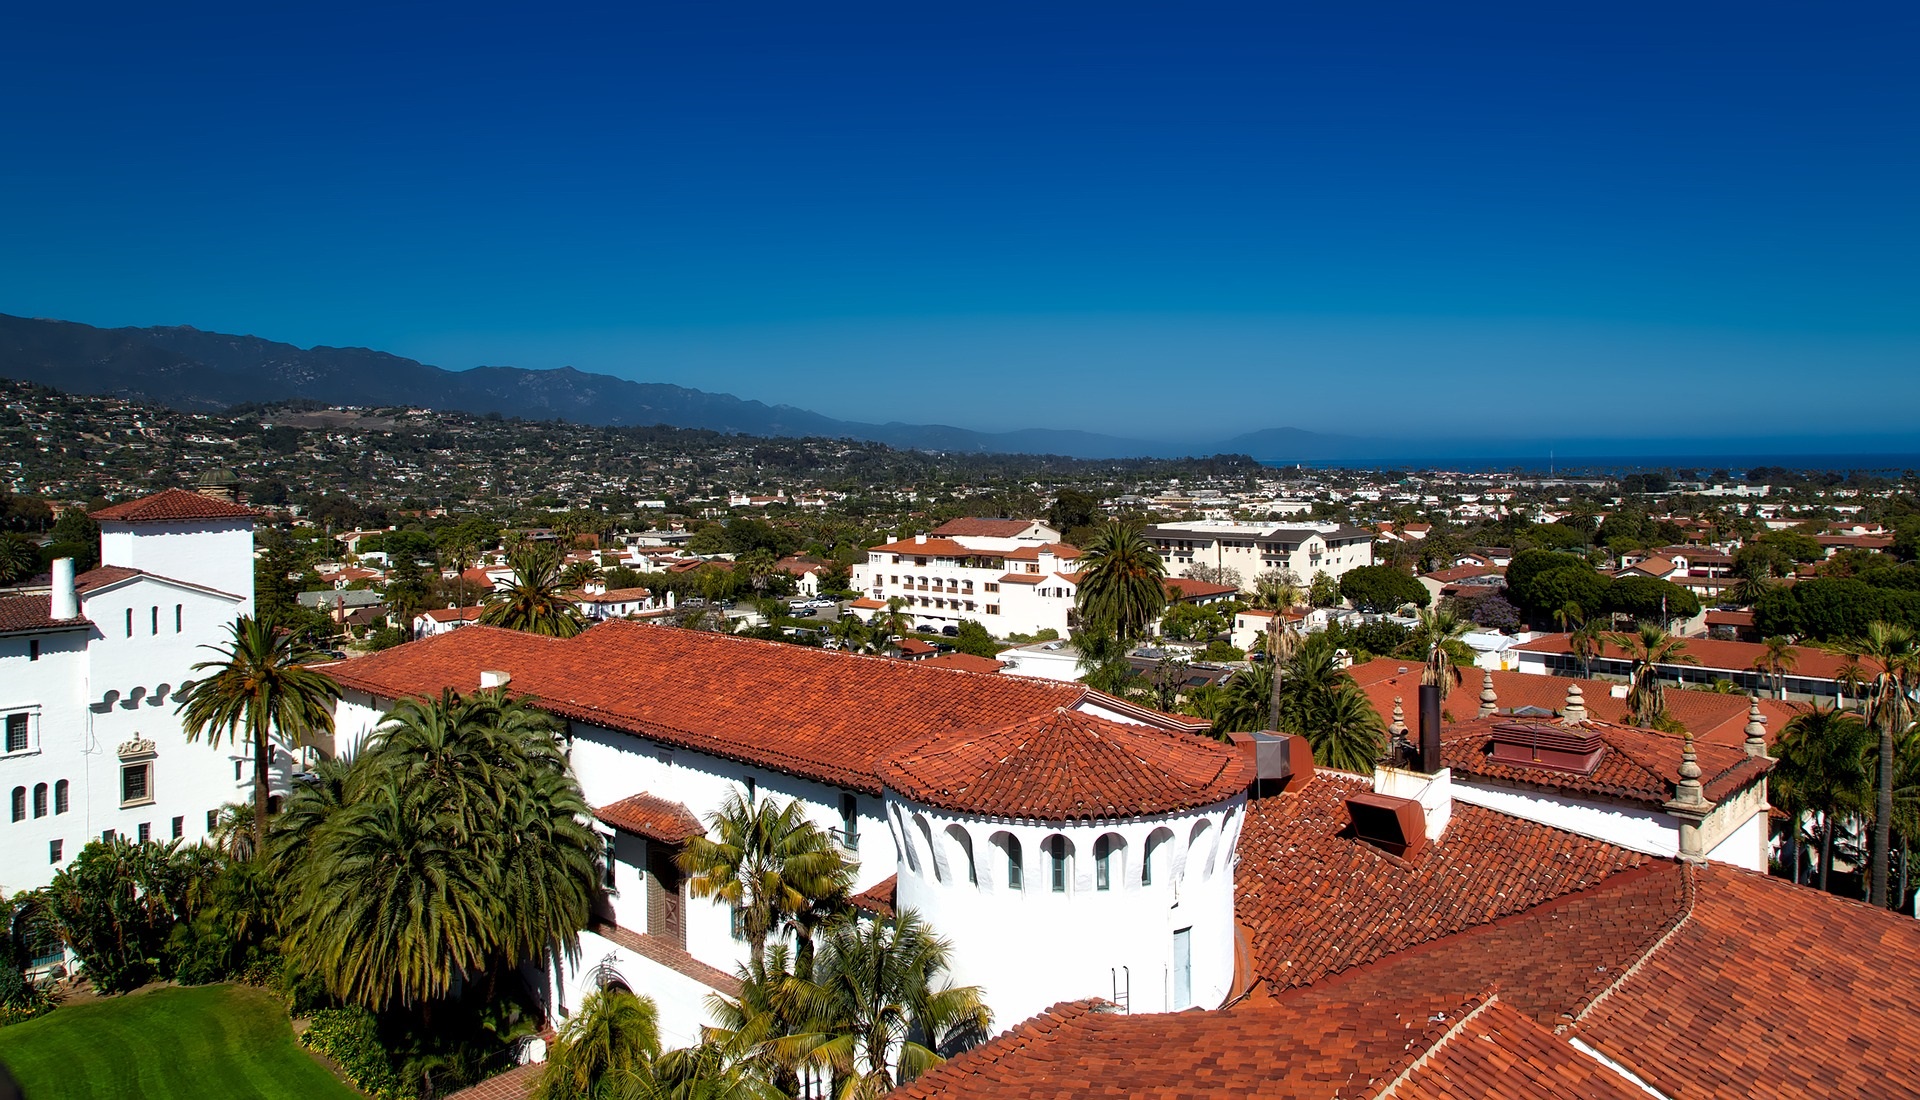 Santa Barbara city view